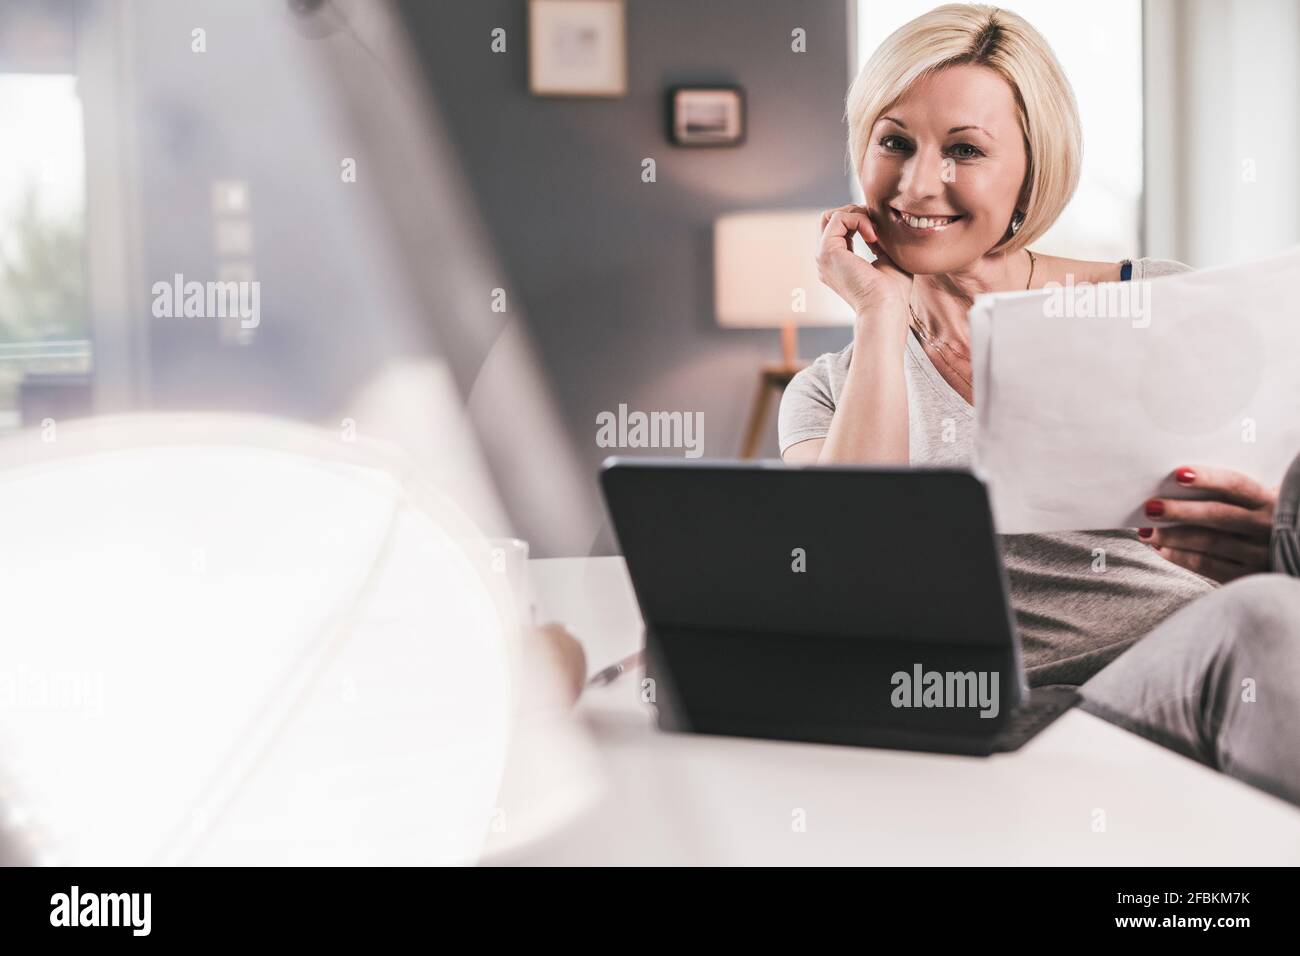 Femme souriante avec une tablette numérique et du papier à la maison Banque D'Images